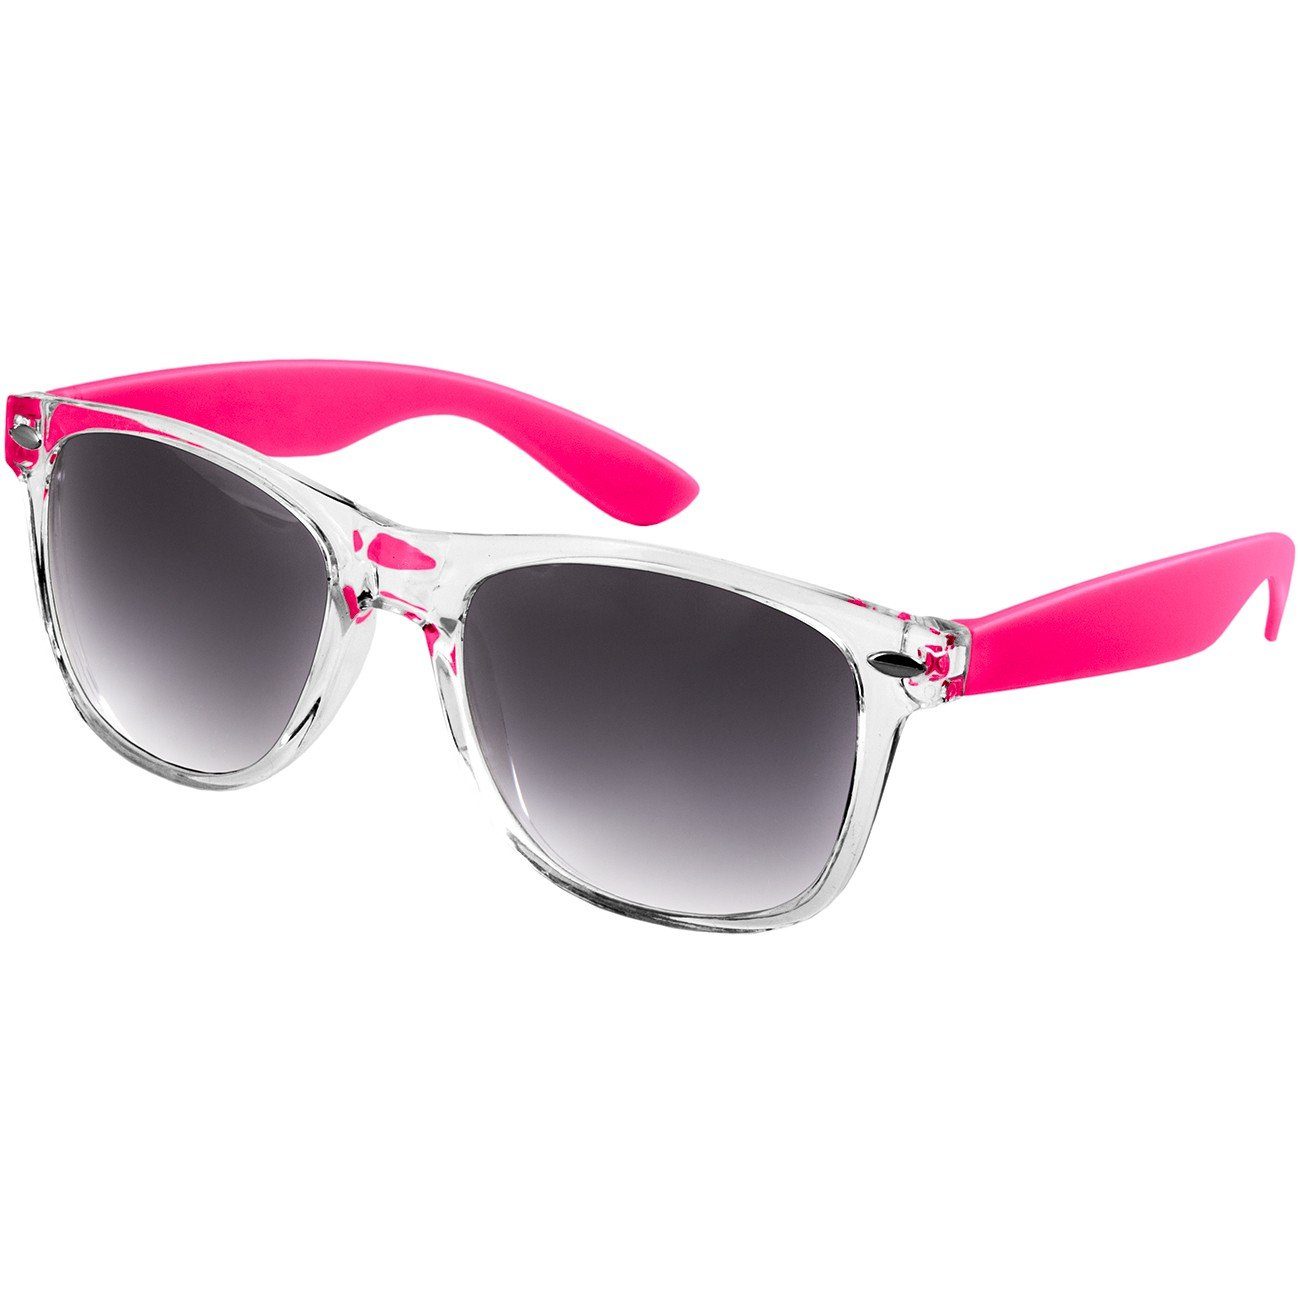 / Damen Sonnenbrille getönt schwarz pink RETRO Caspar Designbrille SG017